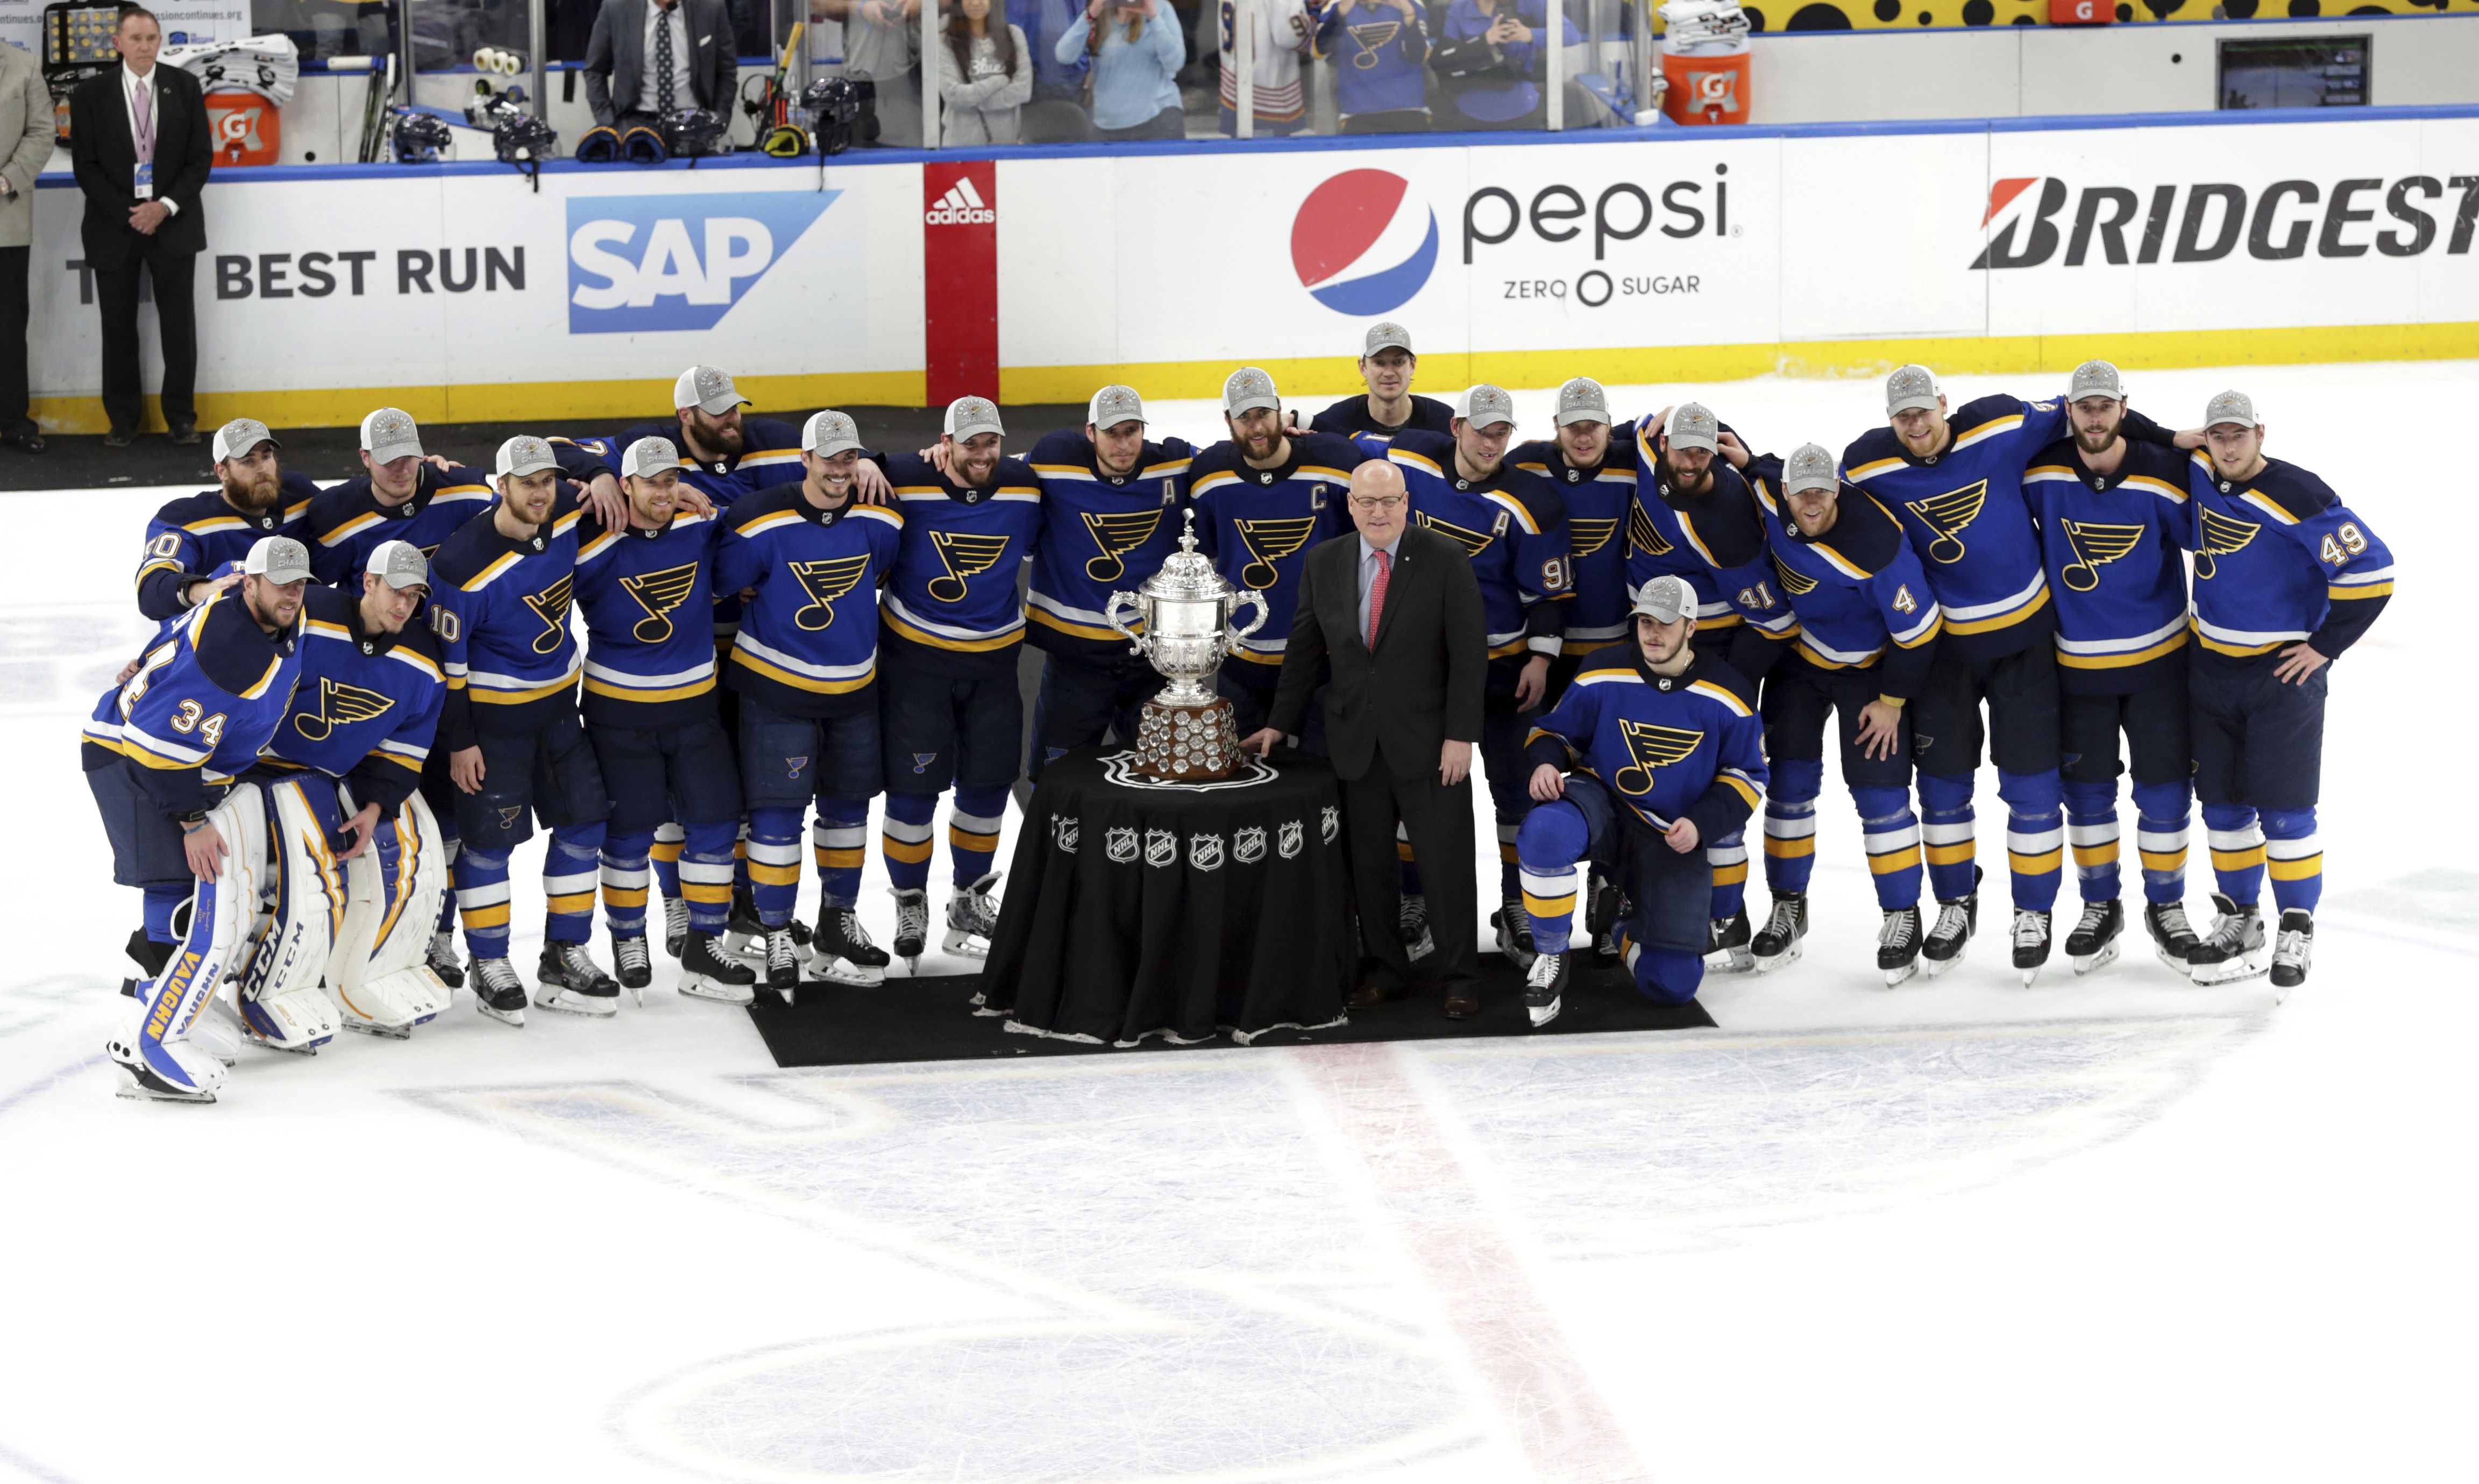 Stanley Cup Final 2019: Boston Bruins bring back members of 2011